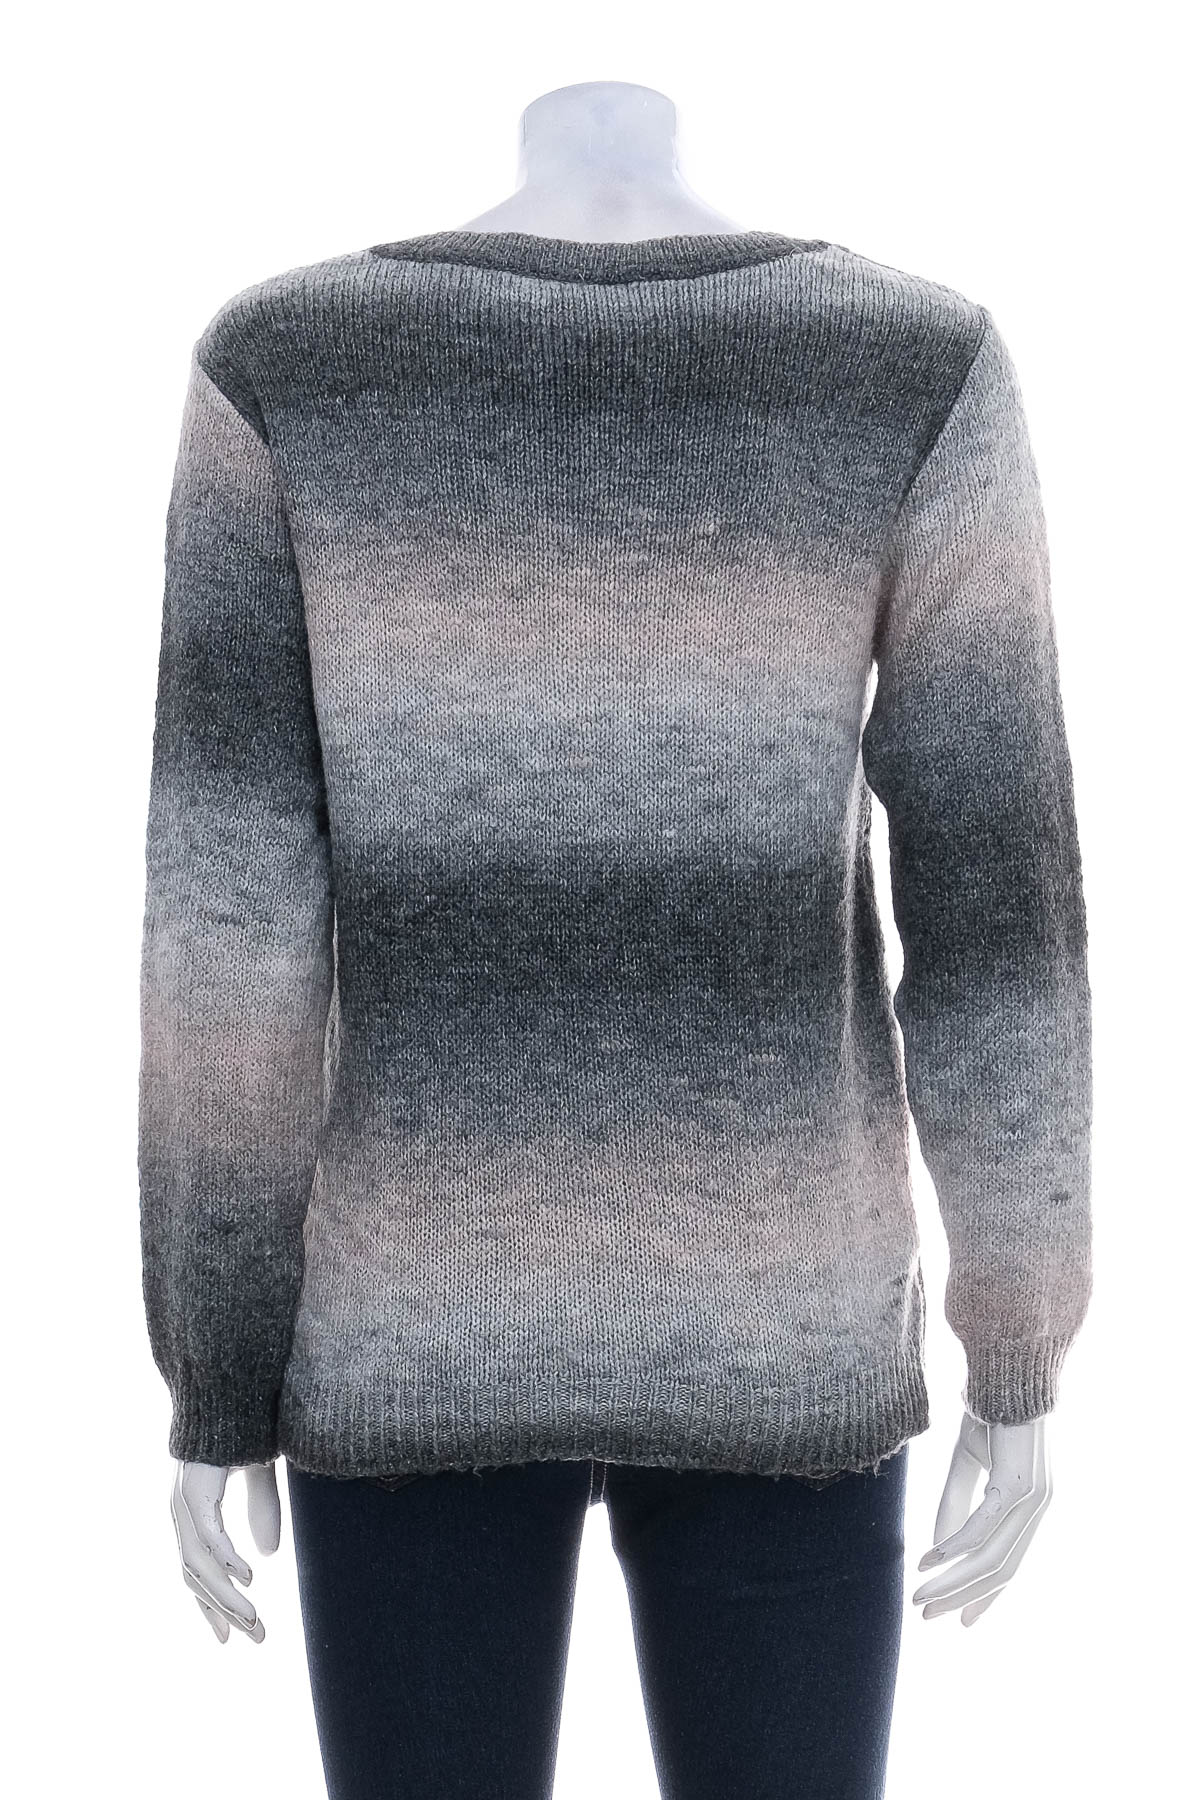 Women's sweater - VENUS - 1